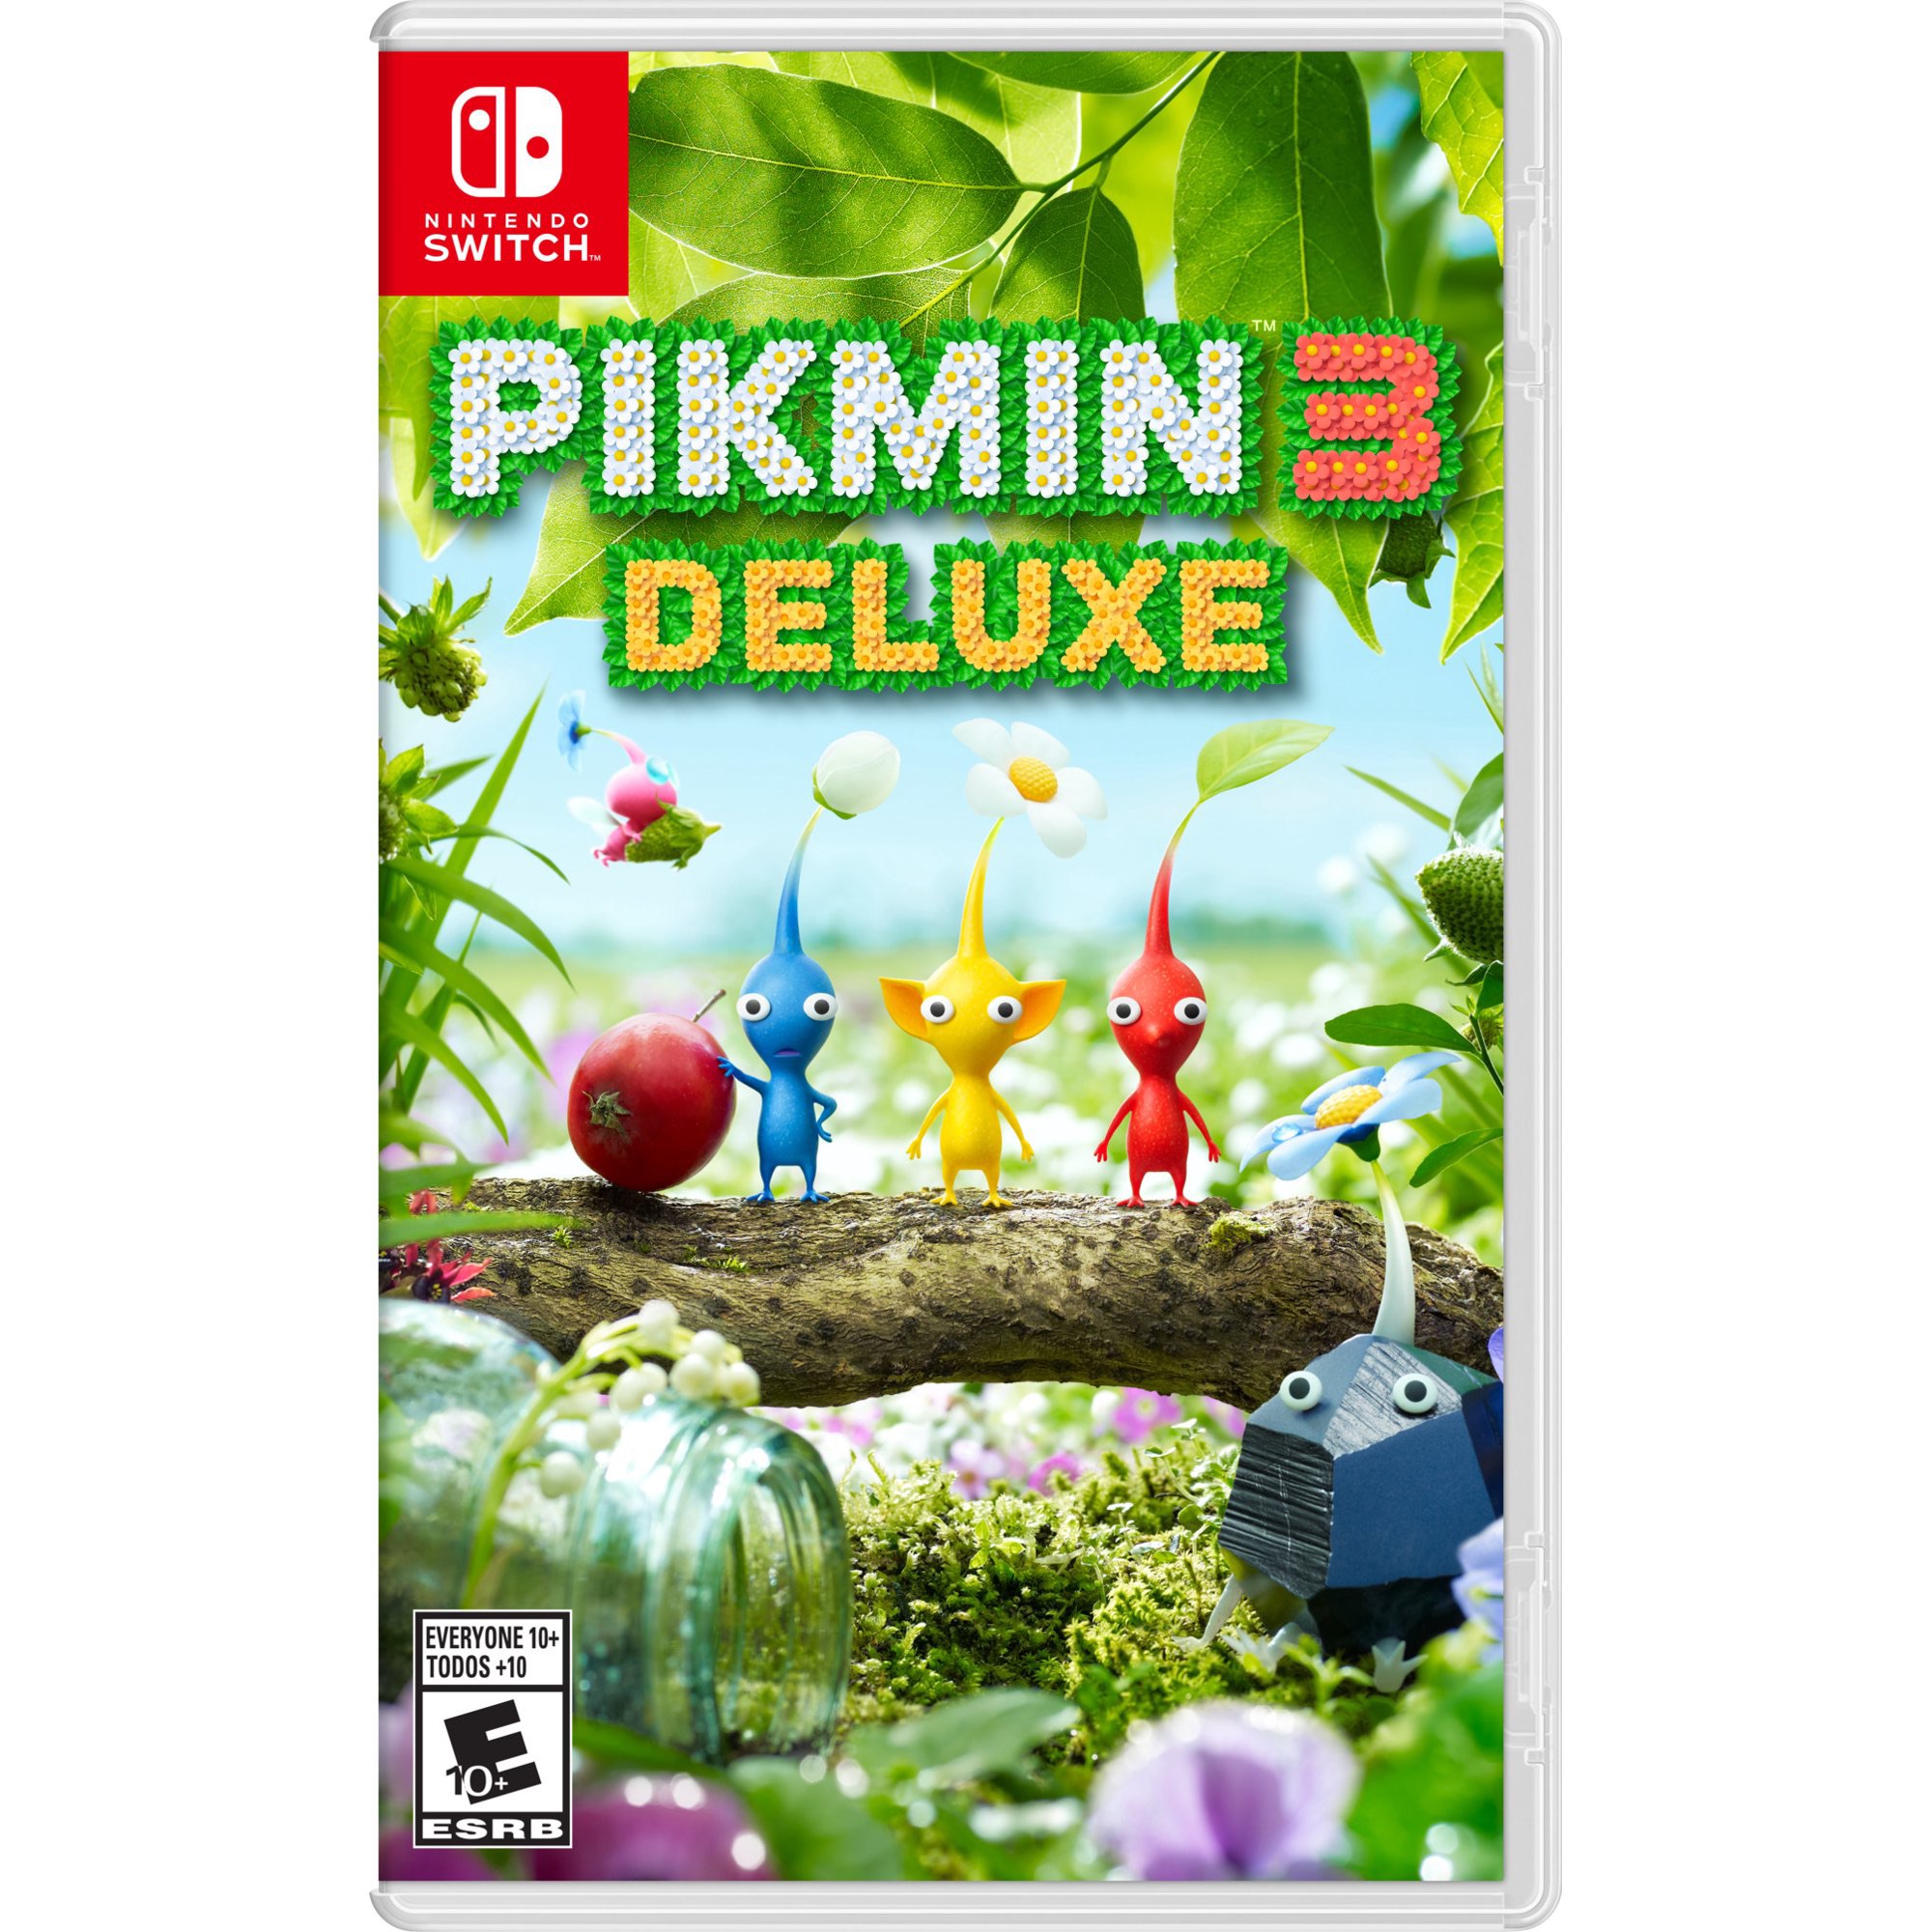 Pikmin 3 Deluxe, Nintendo, Nintendo Switch, 045496594336 - Walmart.com - Walmart.com 皮克敏